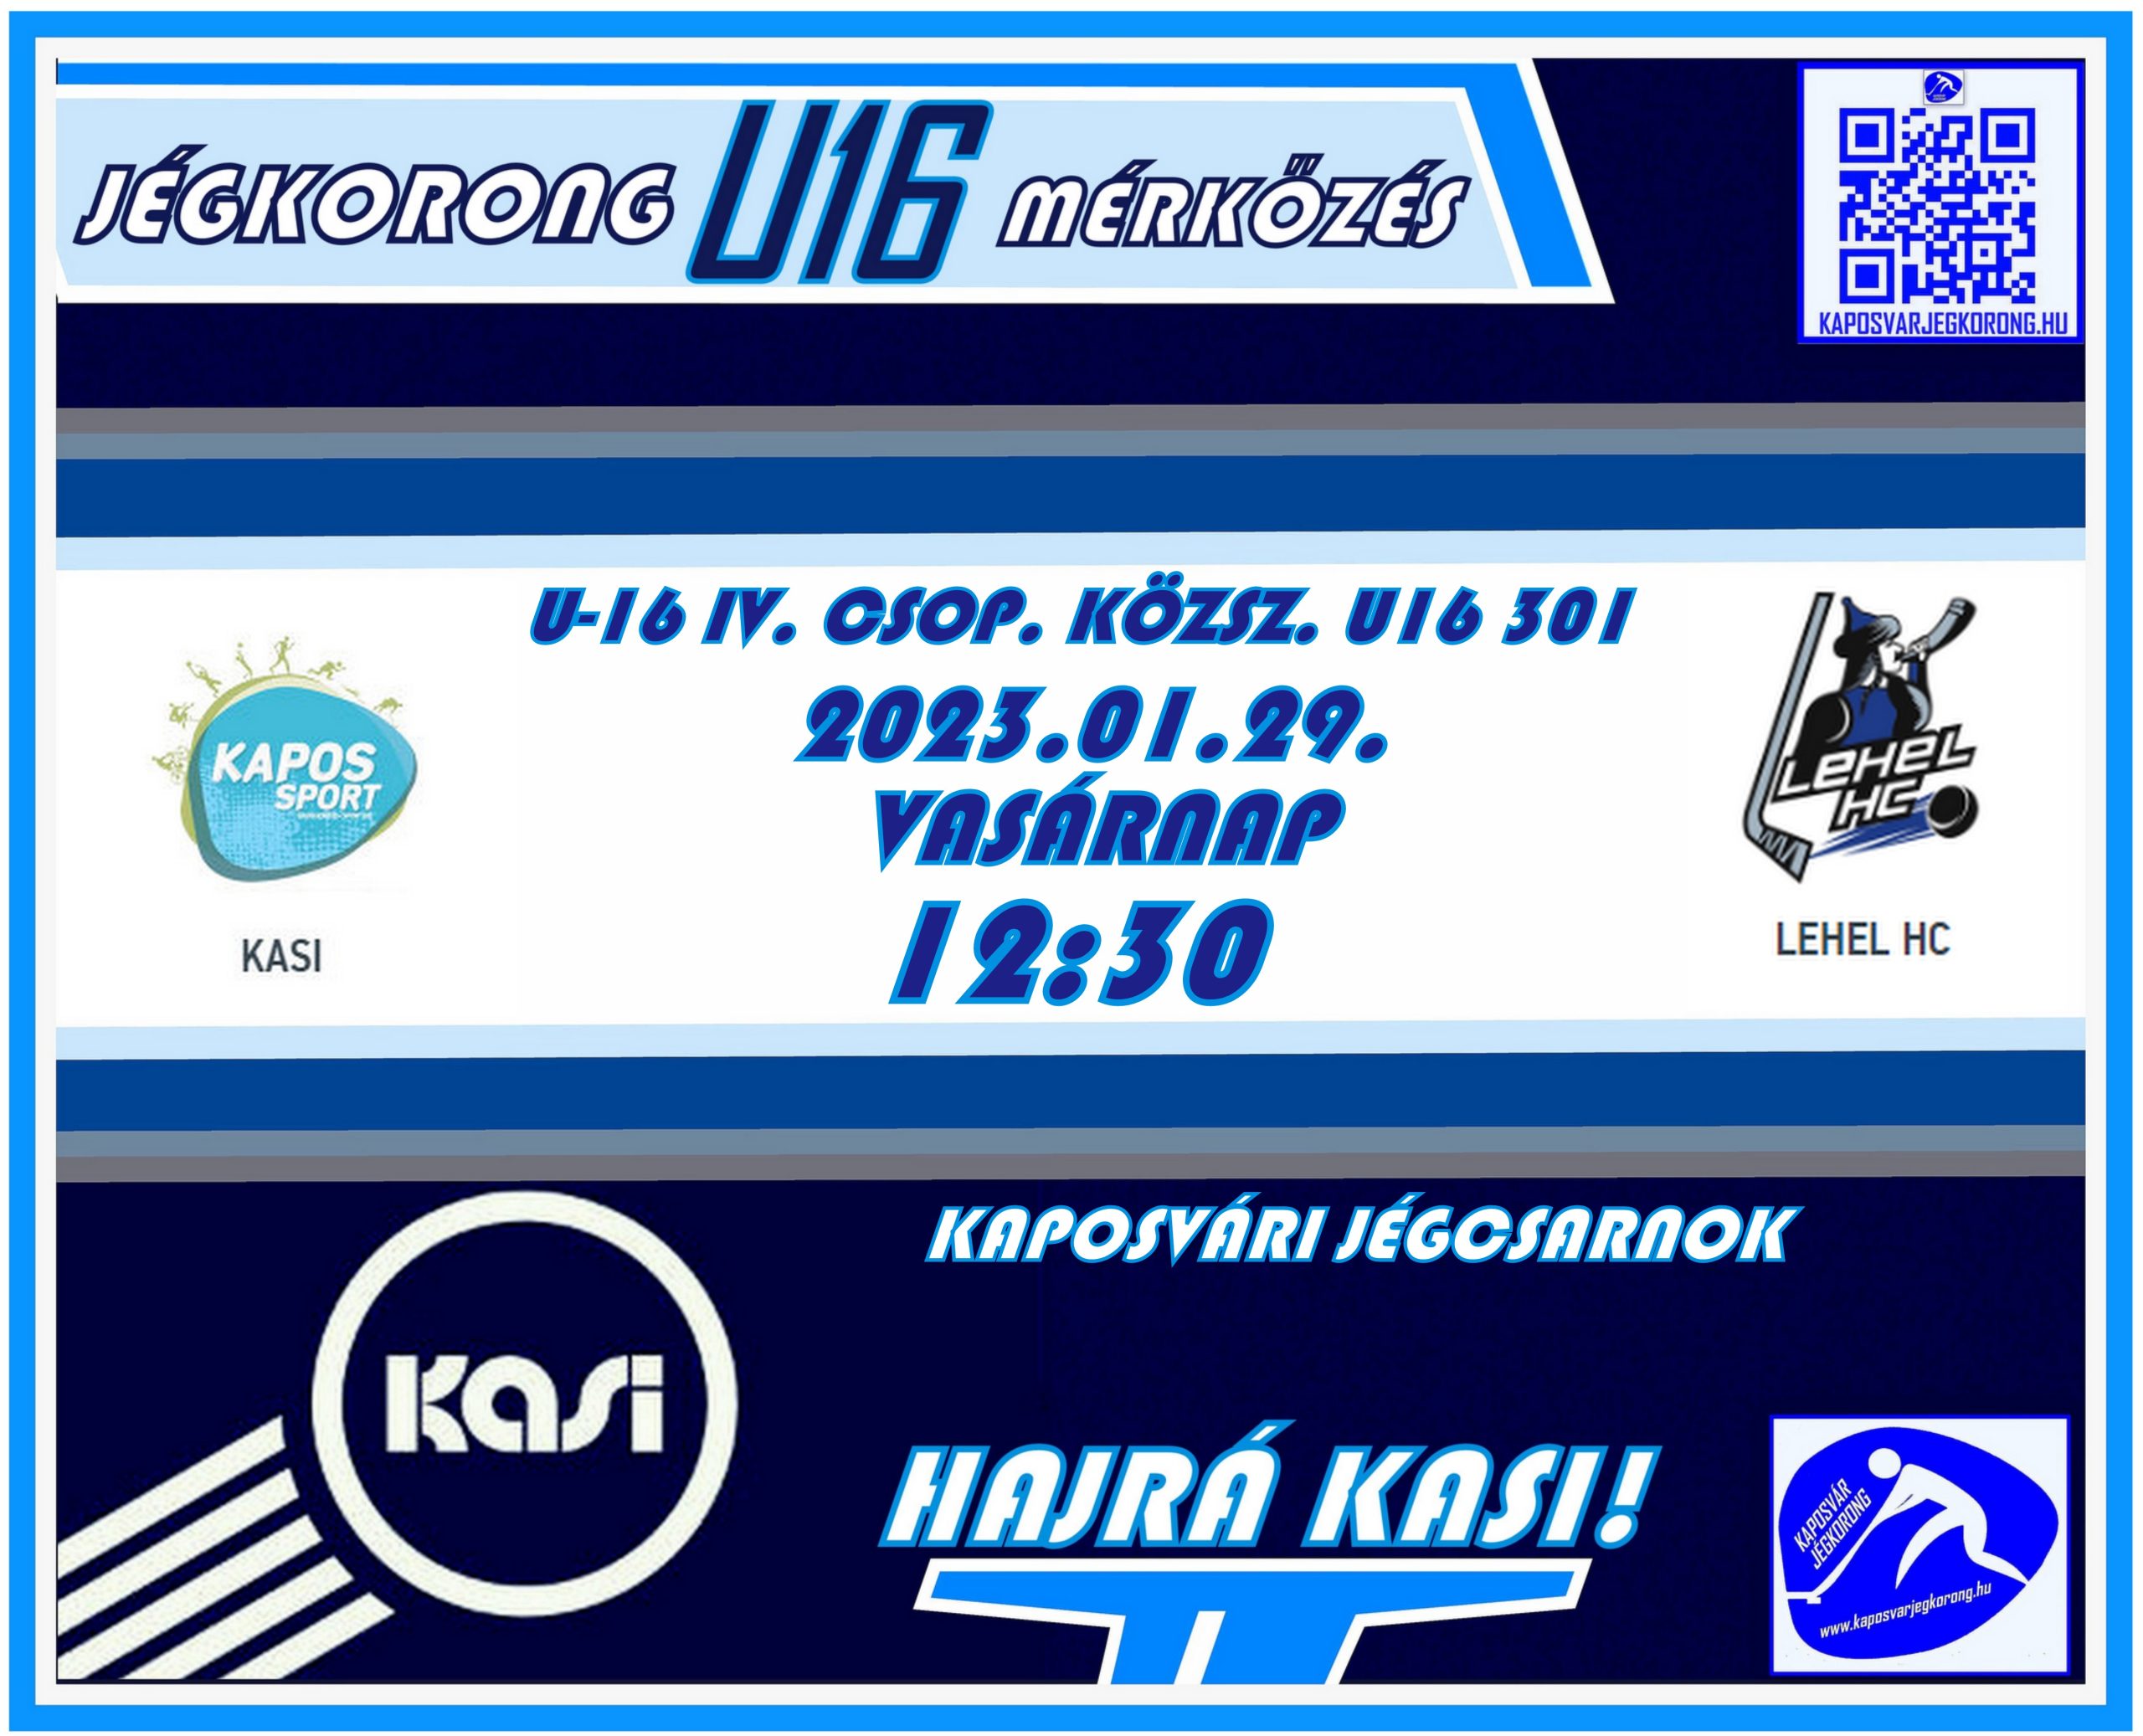 You are currently viewing U-16 IV. CSOPORT – KÖZÉPSZAKASZ – U16 301- KASI-LEHEL HC 2023.01.29